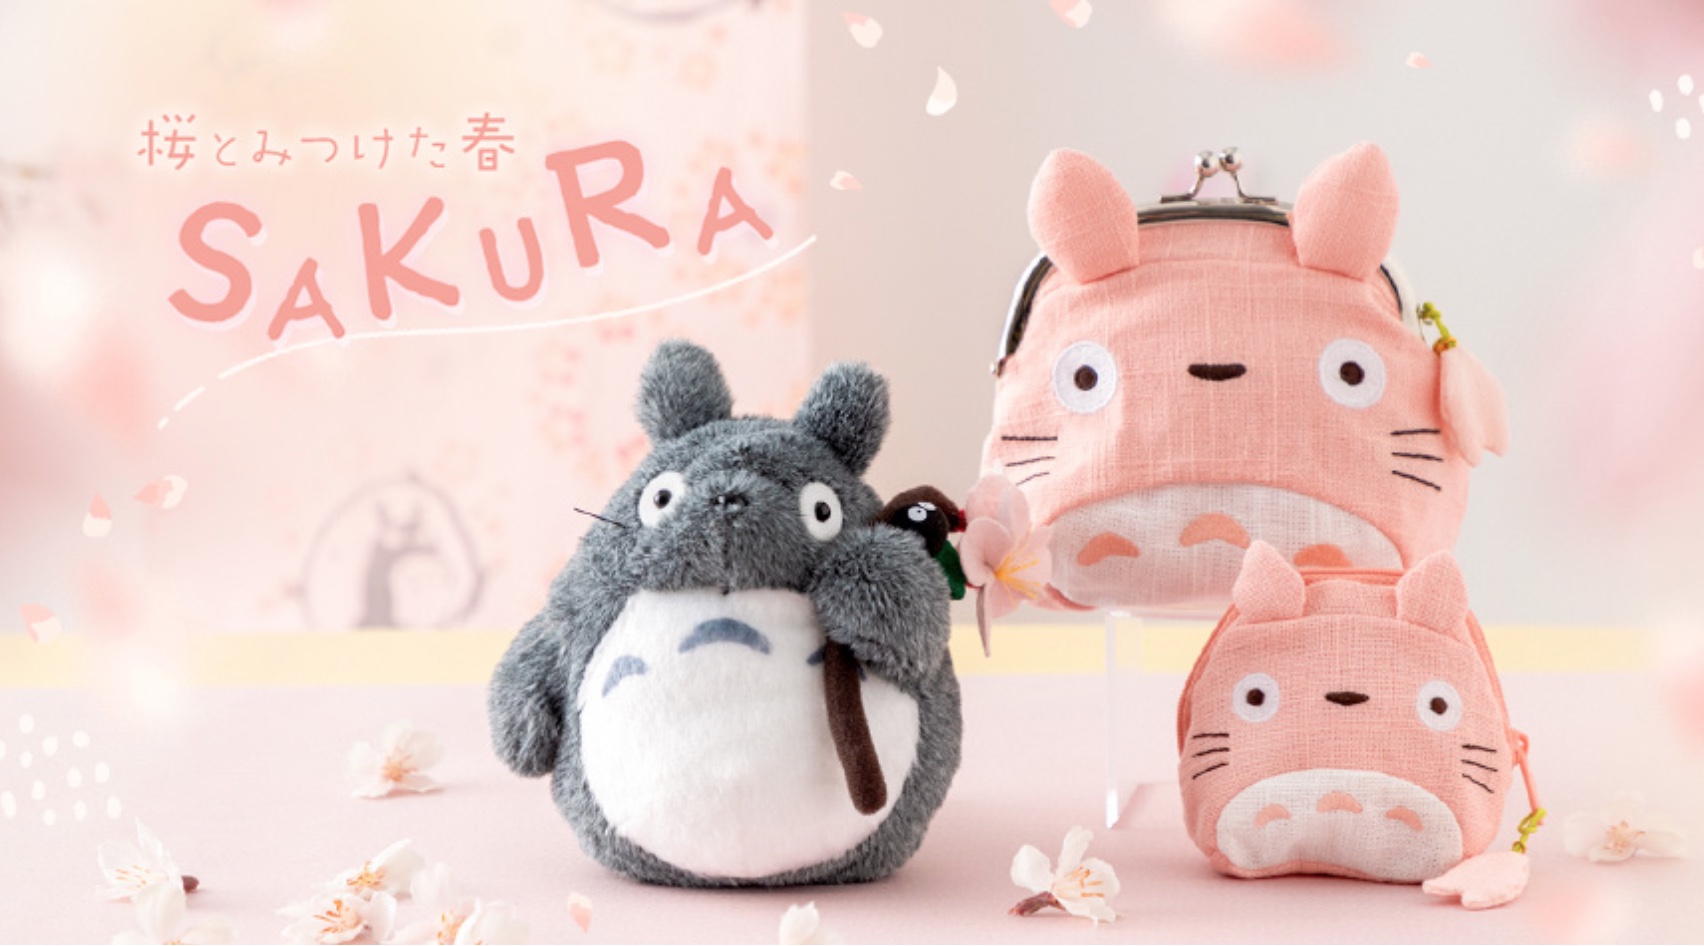 Totoro sakura goods capture the beauty of Studio Ghibli cherry 